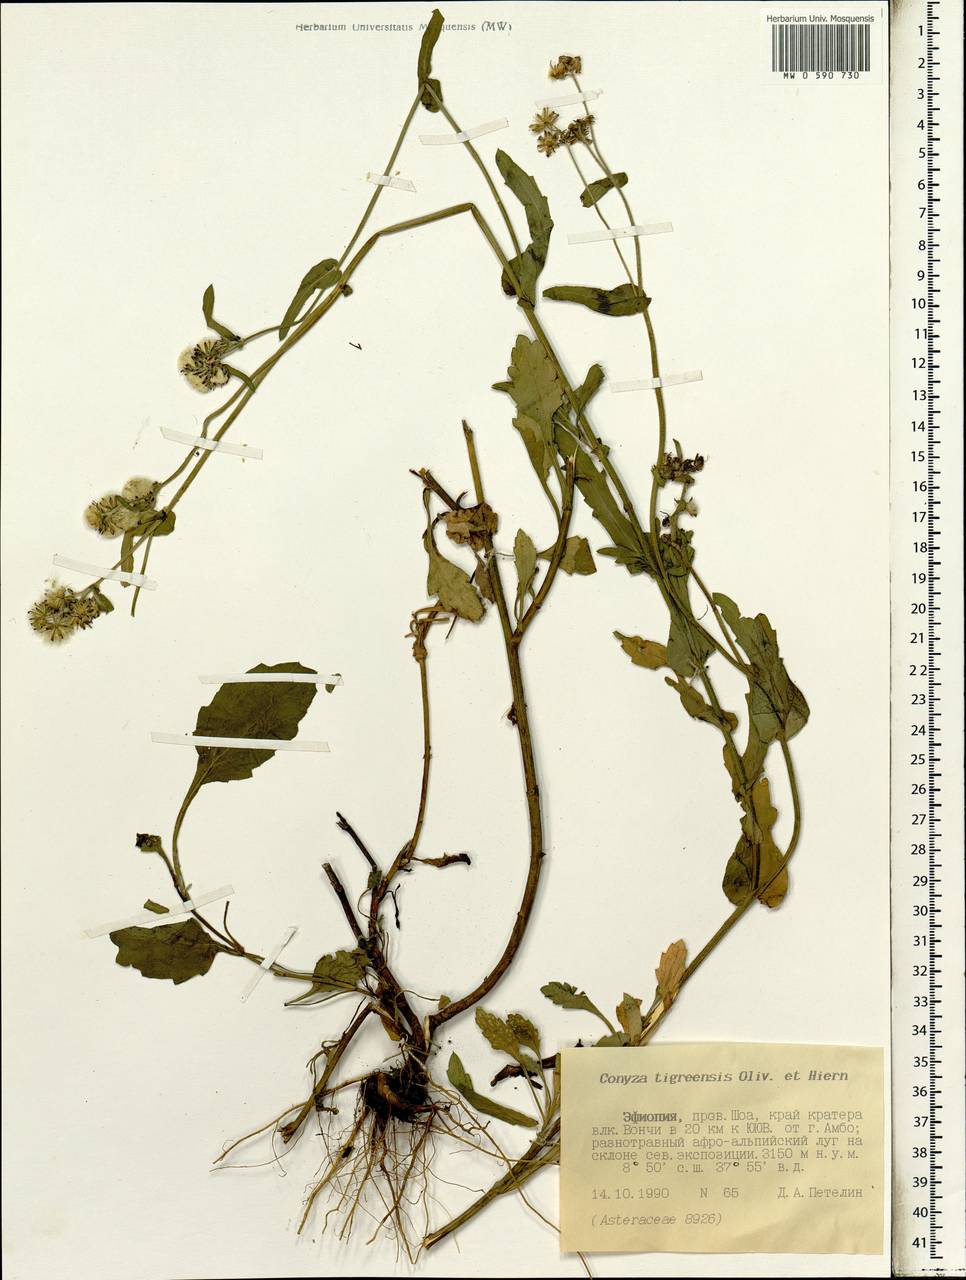 Eschenbachia tigrensis (Oliv. & Hiern) G. L. Nesom, Africa (AFR) (Ethiopia)